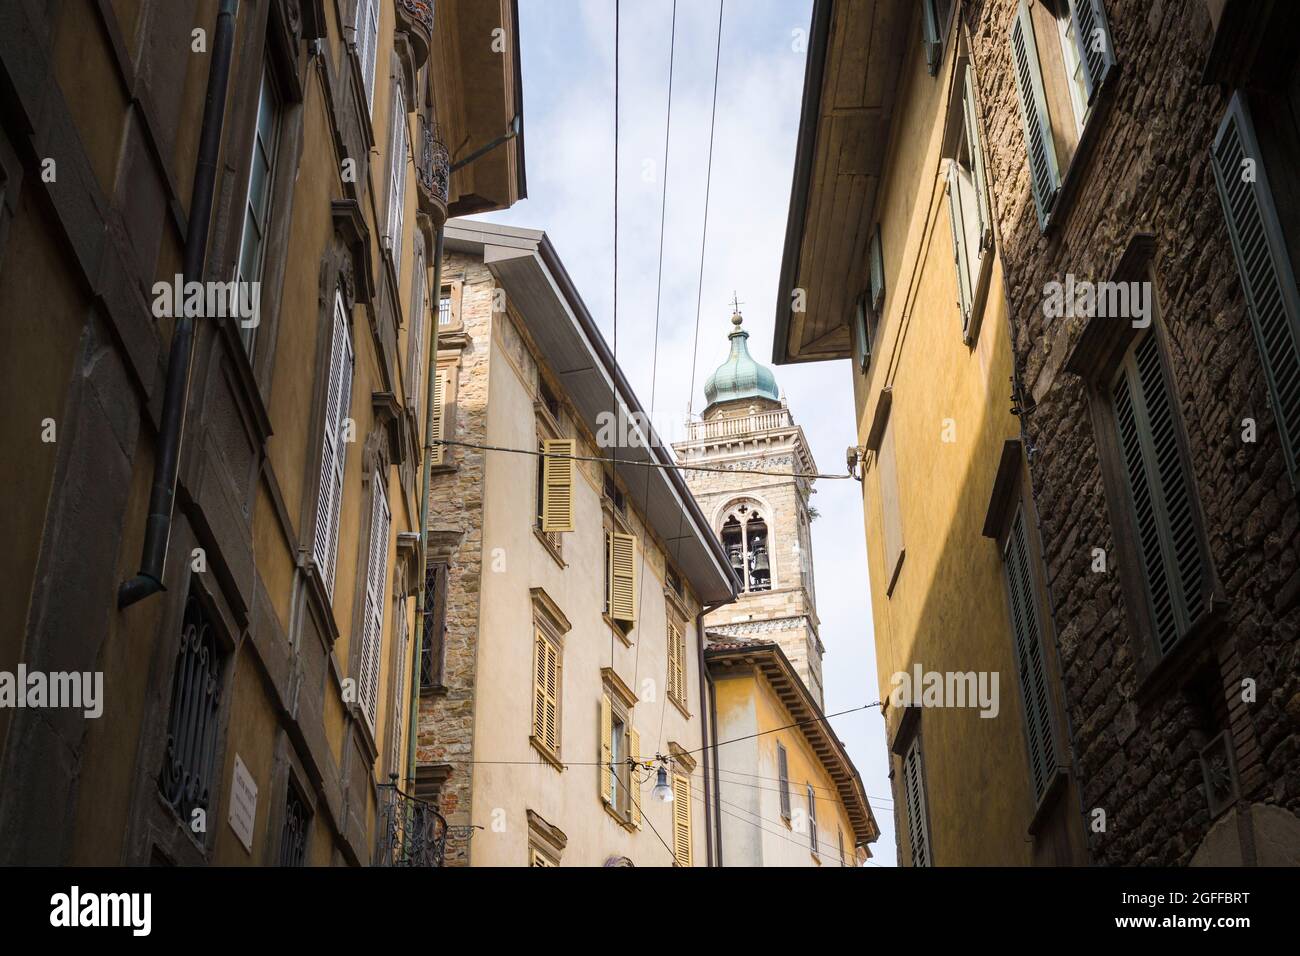 Città alta, Bergamo, Italia: Tipica scena stradale; palazzi con finestre a saracinesche; stradine strette e curving; scorcio della Basilica di S. Maria maggiore. Foto Stock